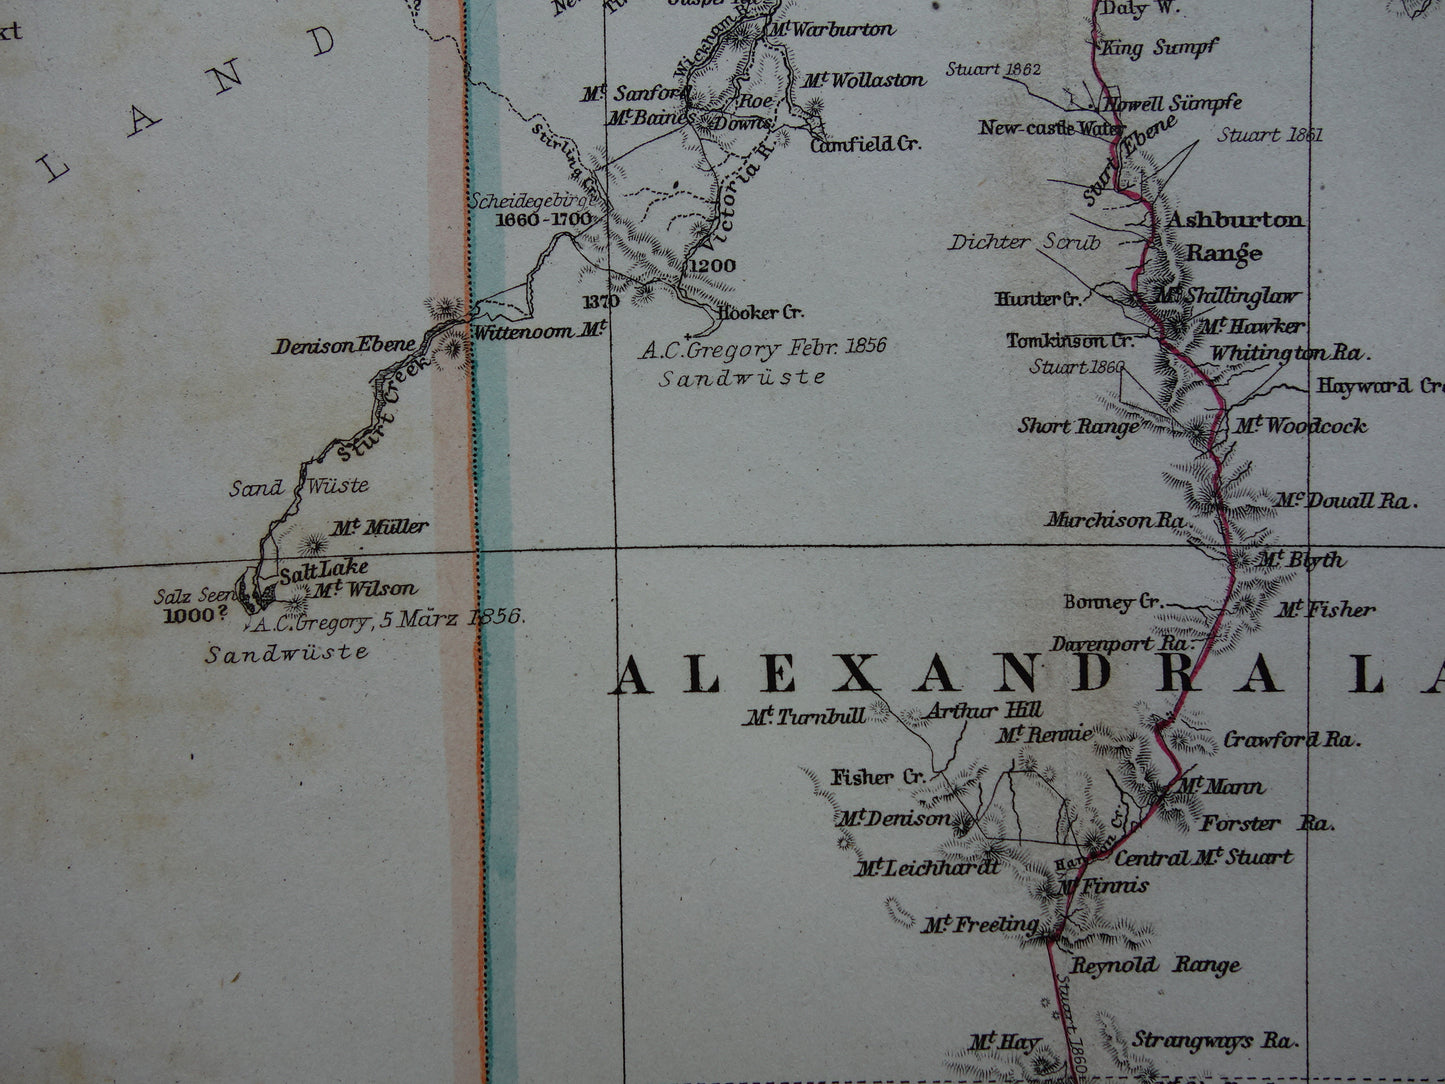 AUSTRALIE grote oude kaart van Australië in 1866 originele antieke Duitse landkaart - vintage landkaarten